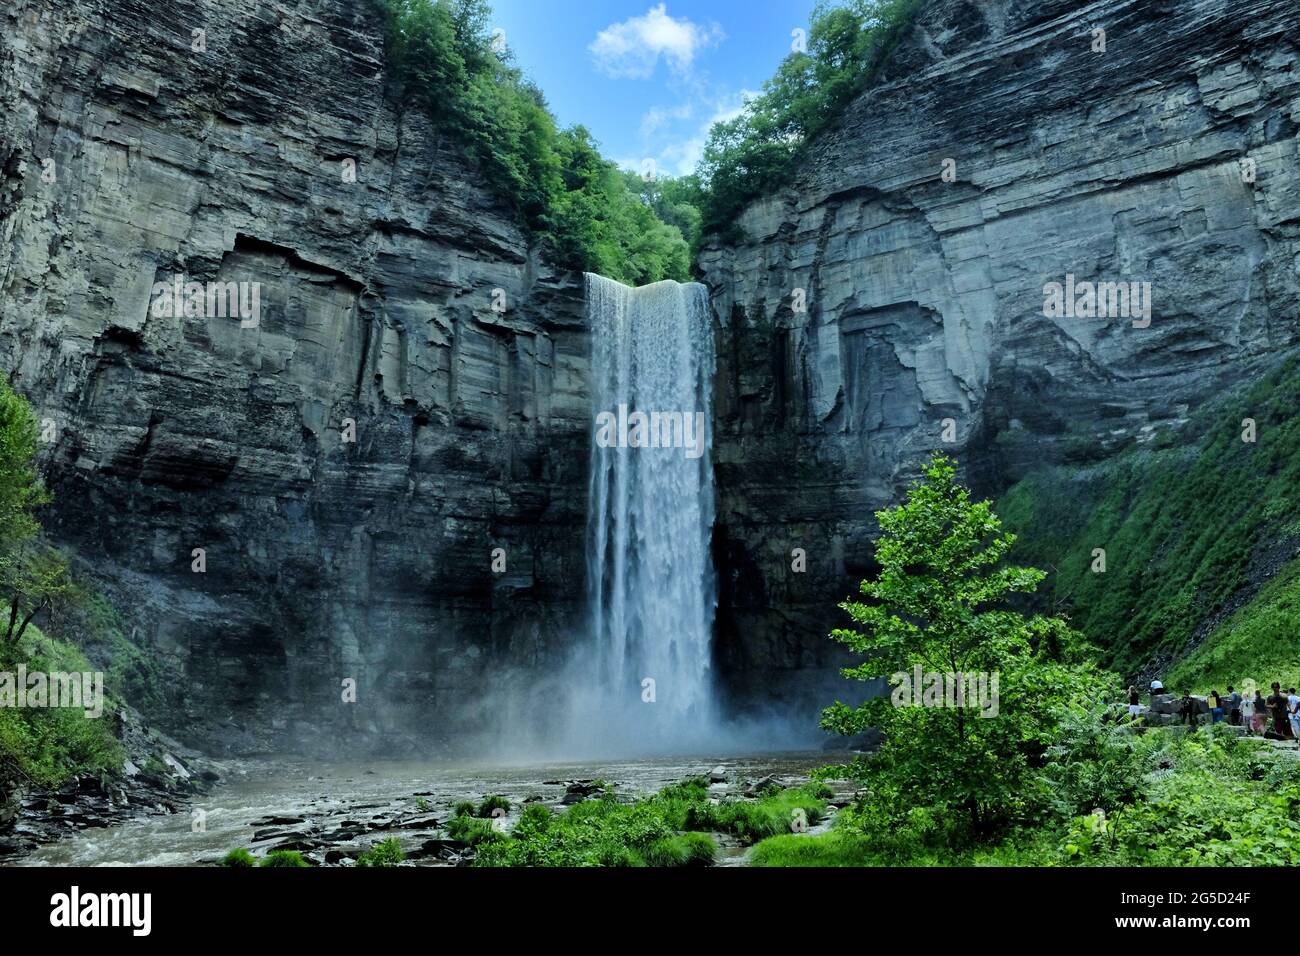 TRUMANSBURG, NEW YORK - 20 JUIN 2021 : les chutes de Taughannock près d'Ithaca, New York et du lac Cayuga, plongent 215 pieds, soit 33 pieds de plus que le Niagara Fa Banque D'Images